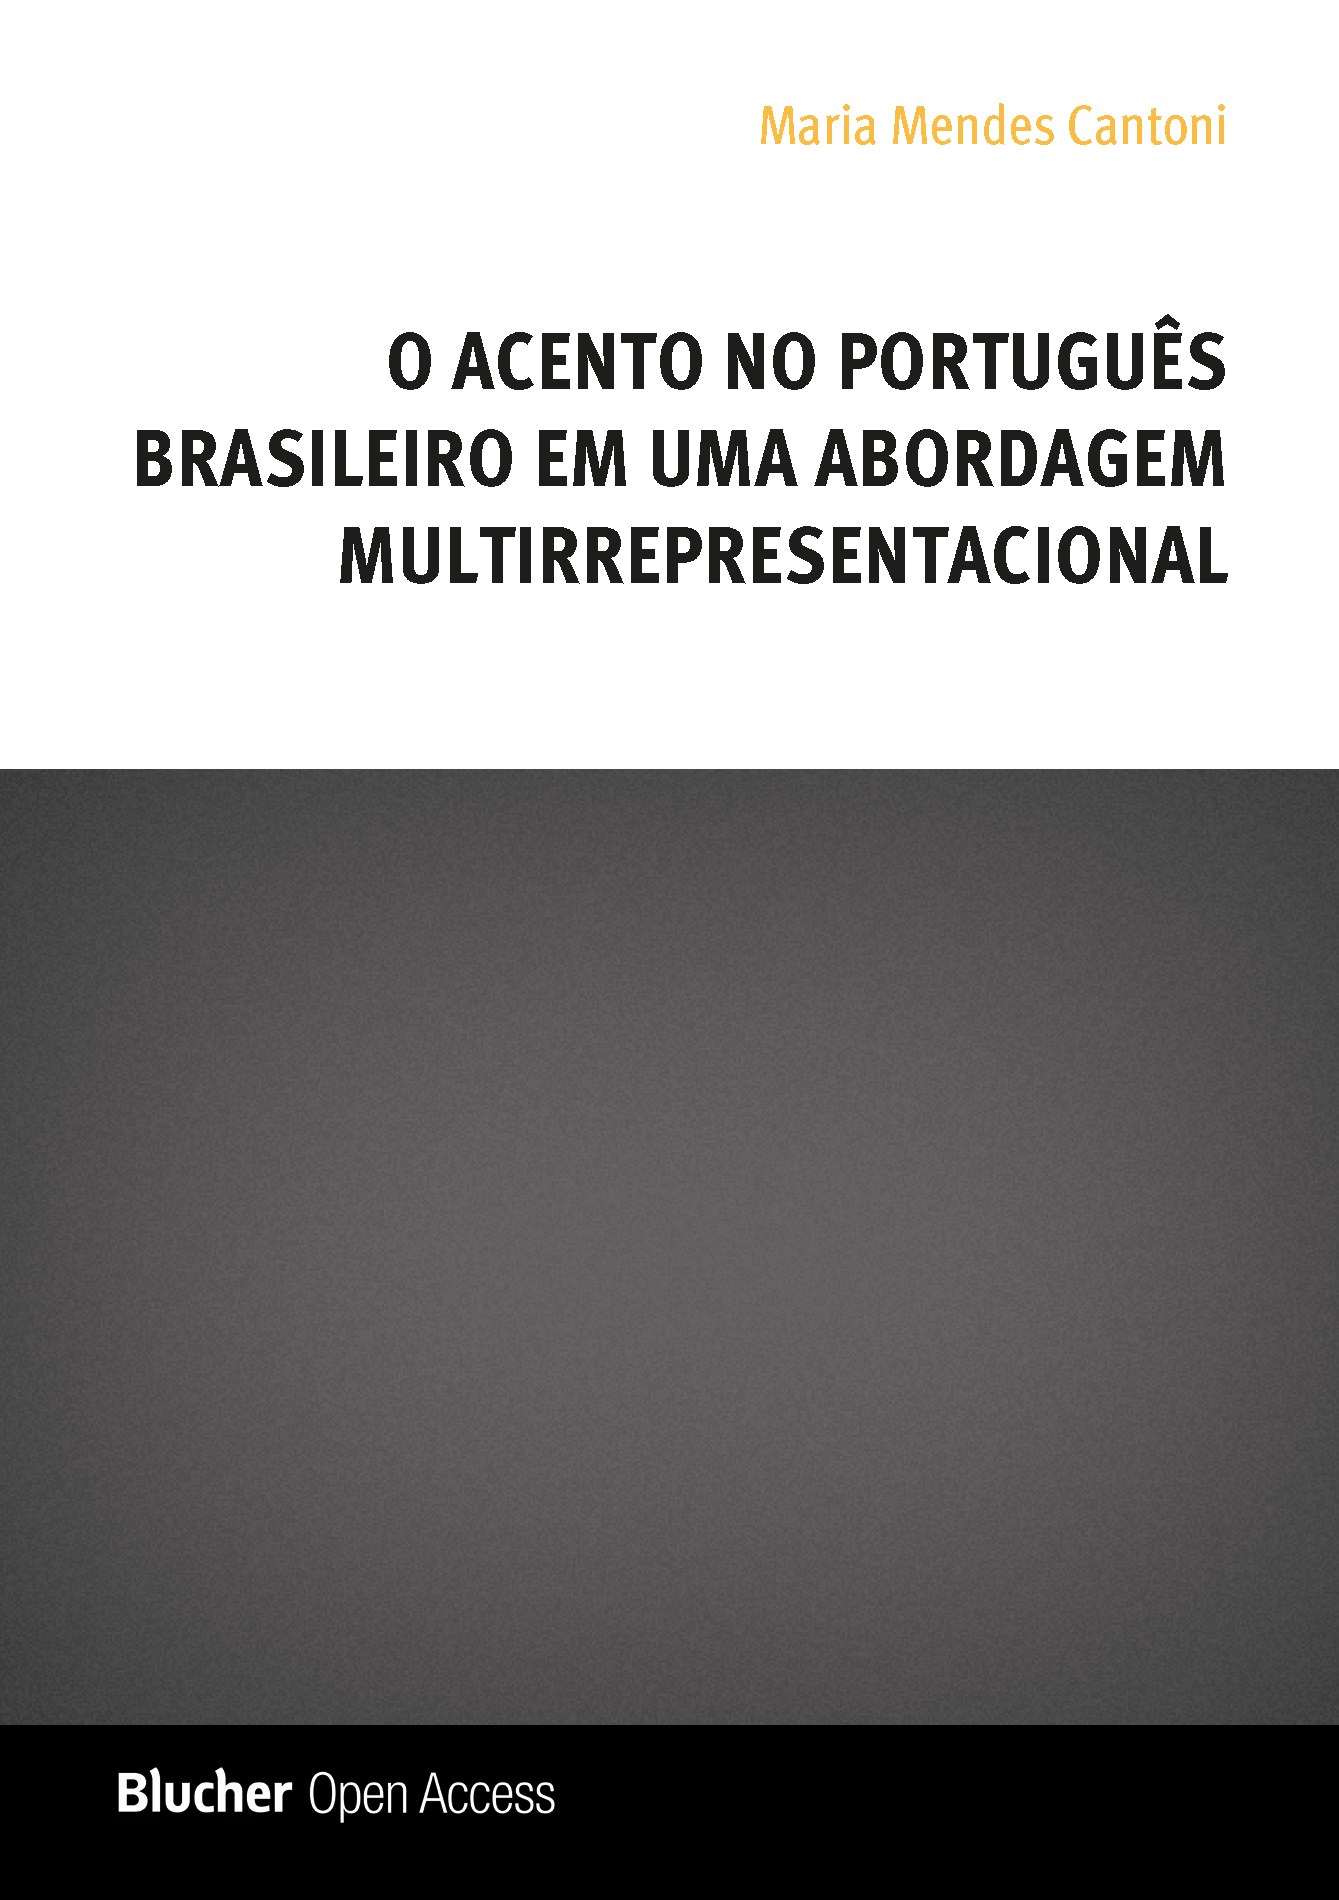 O Acento no Português Brasileiro em uma Abordagem Multirrepresentacional